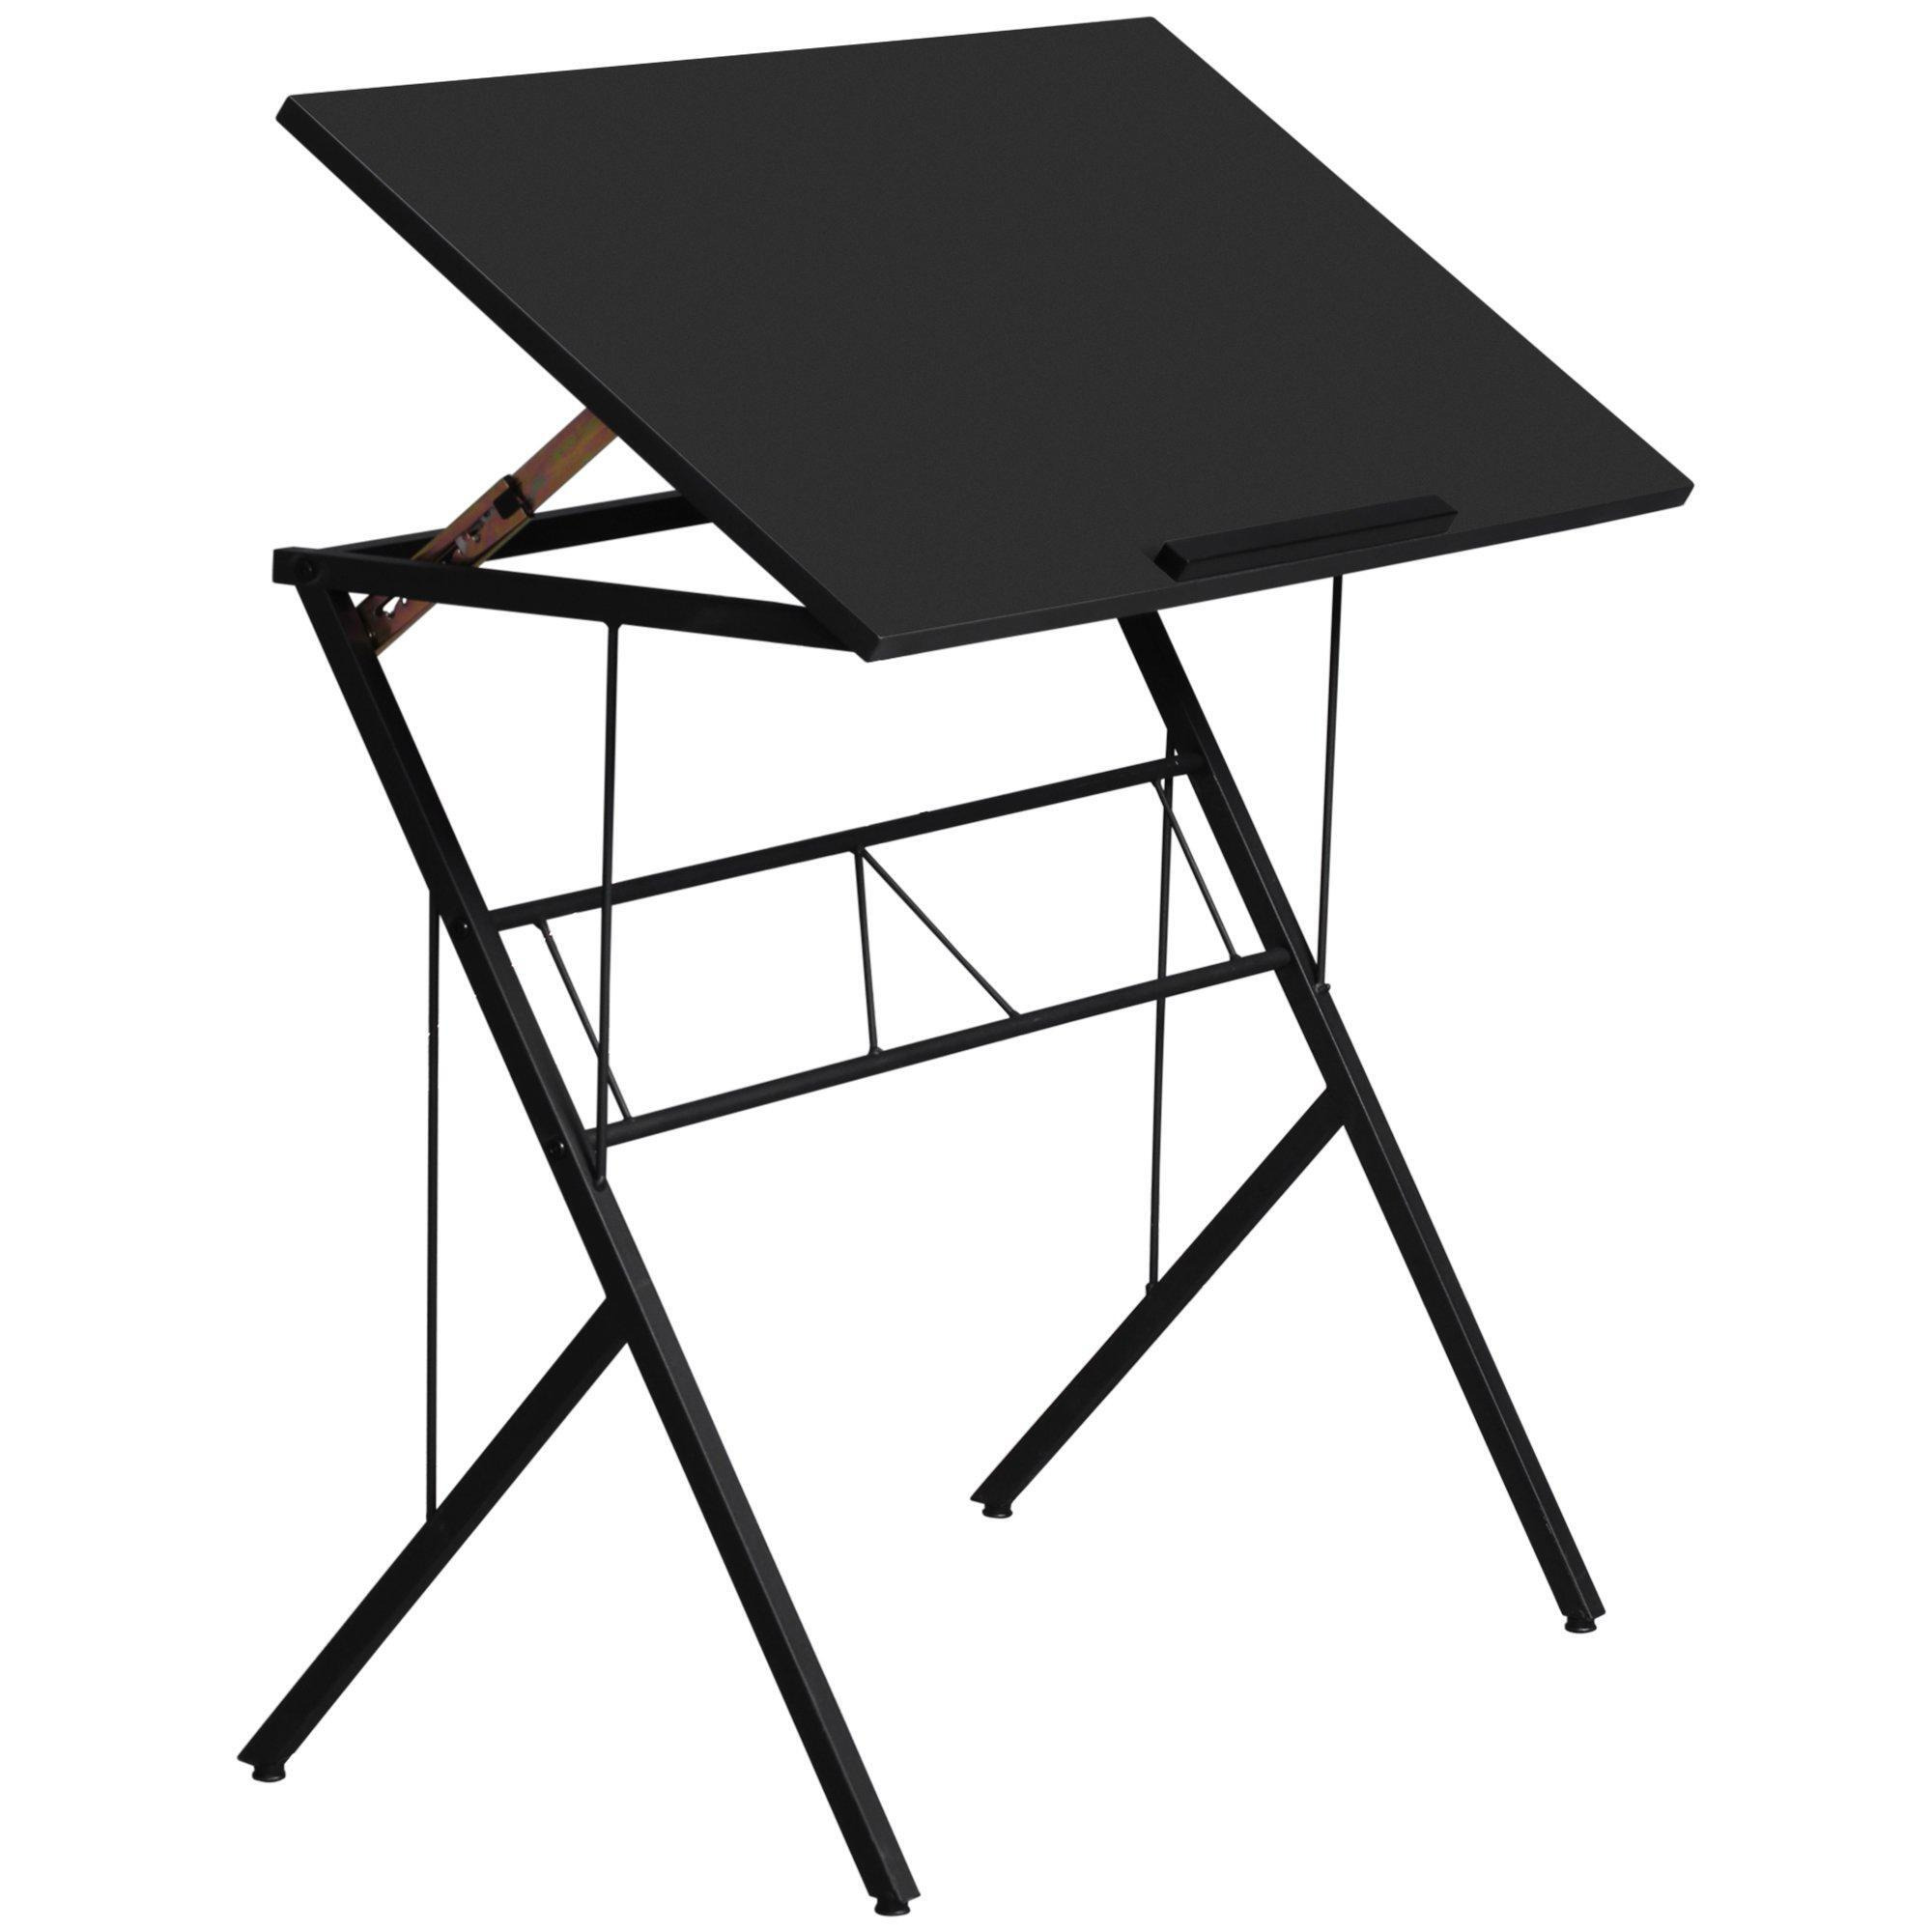 Adjustable Laptop Stand Tilt Writing Desk Workstation Black Table w/ Stopper - image 1